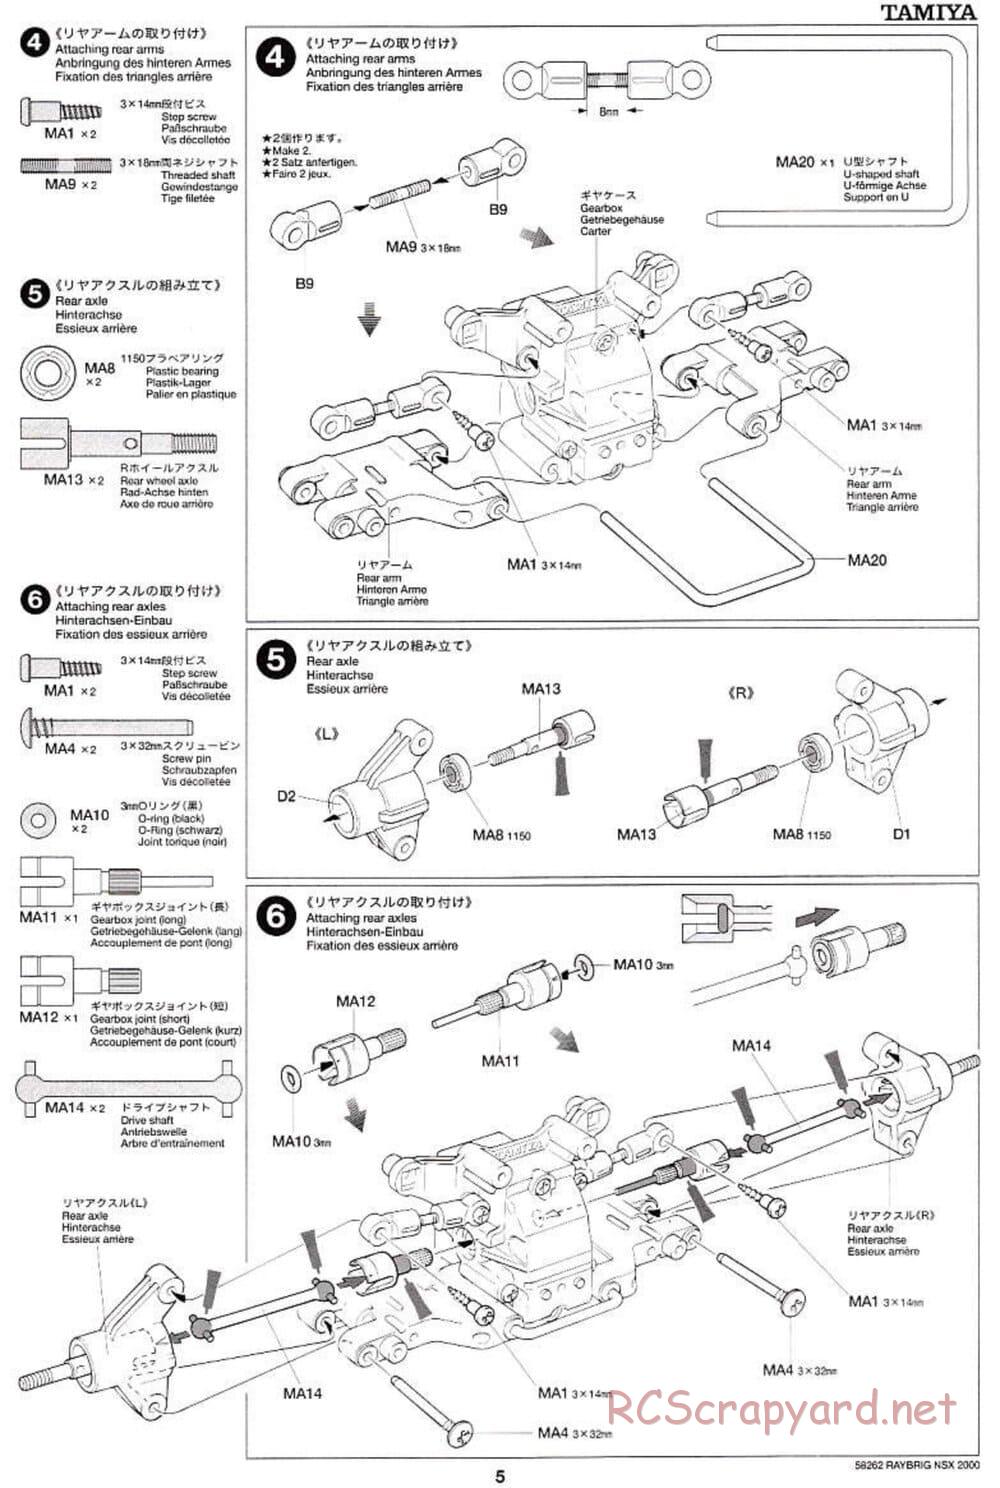 Tamiya - Raybrig NSX 2000 - TB-01 Chassis - Manual - Page 5